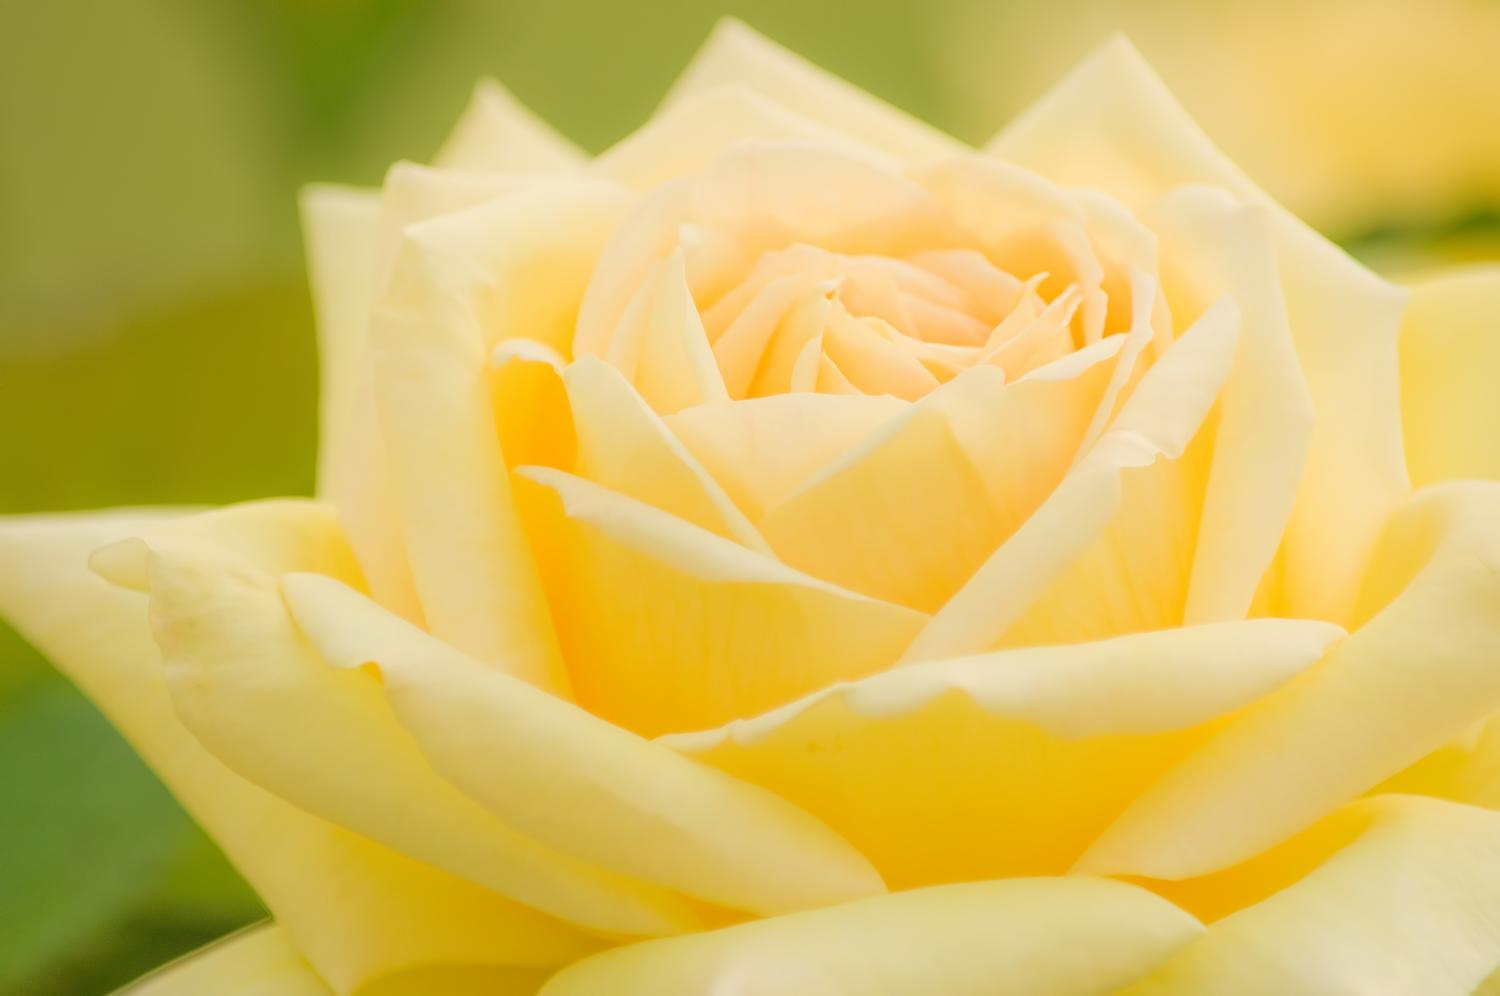 浜寺公園 のバラの見ごろやバラまつりとバラ園情報 バラ園案内 バラの見ごろと開花状況